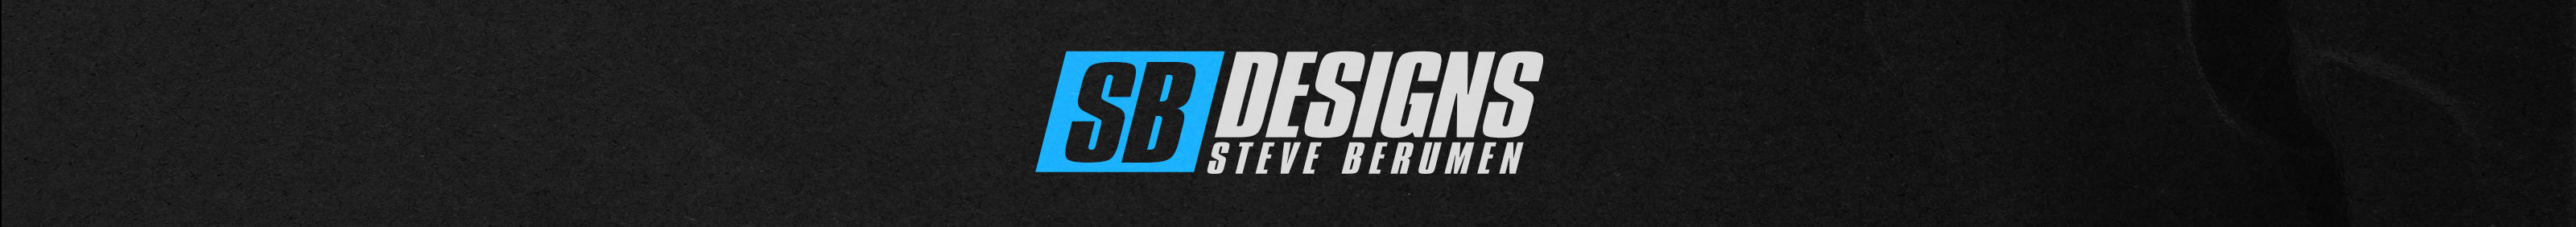 Steve Berumen's profile banner